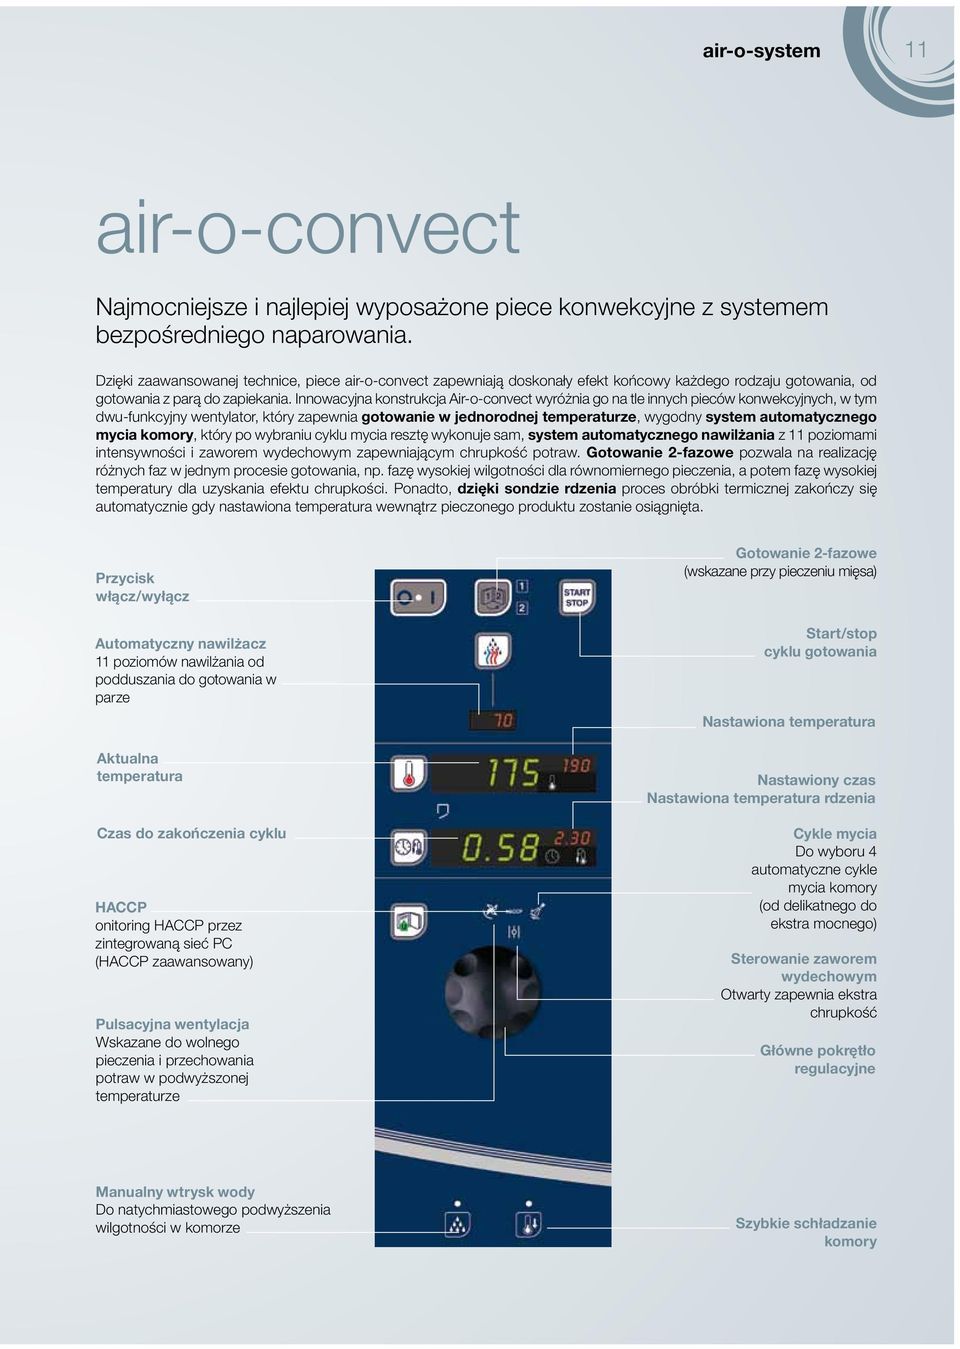 Innowacyjna konstrukcja Air-o-convect wyróżnia go na tle innych pieców konwekcyjnych, w tym dwu-funkcyjny wentylator, który zapewnia gotowanie w jednorodnej temperaturze, wygodny system